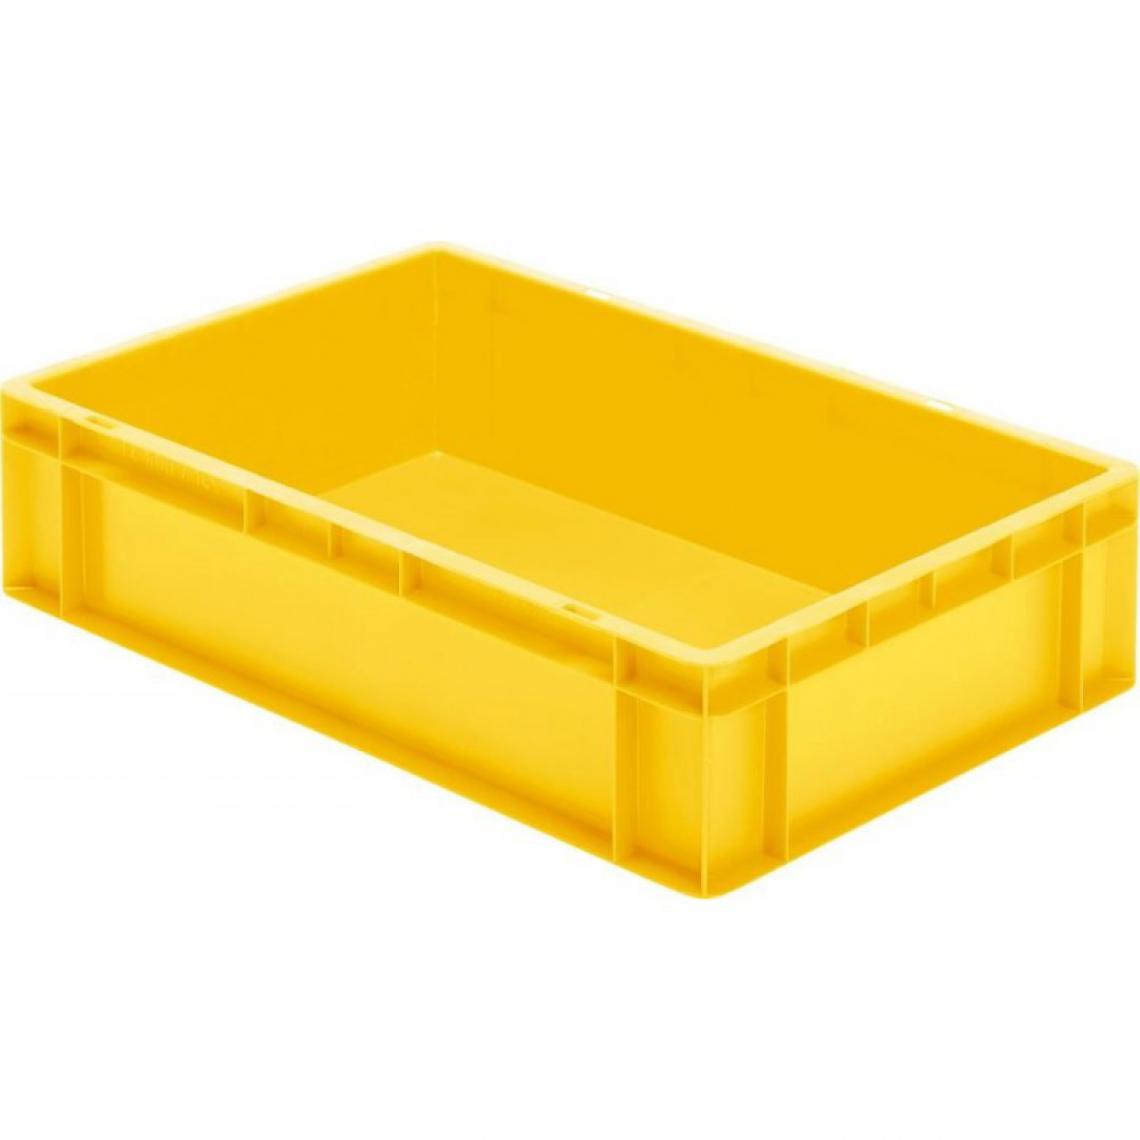 marque generique - Caisse de transport 600x400x145 mm jaune - Coffres